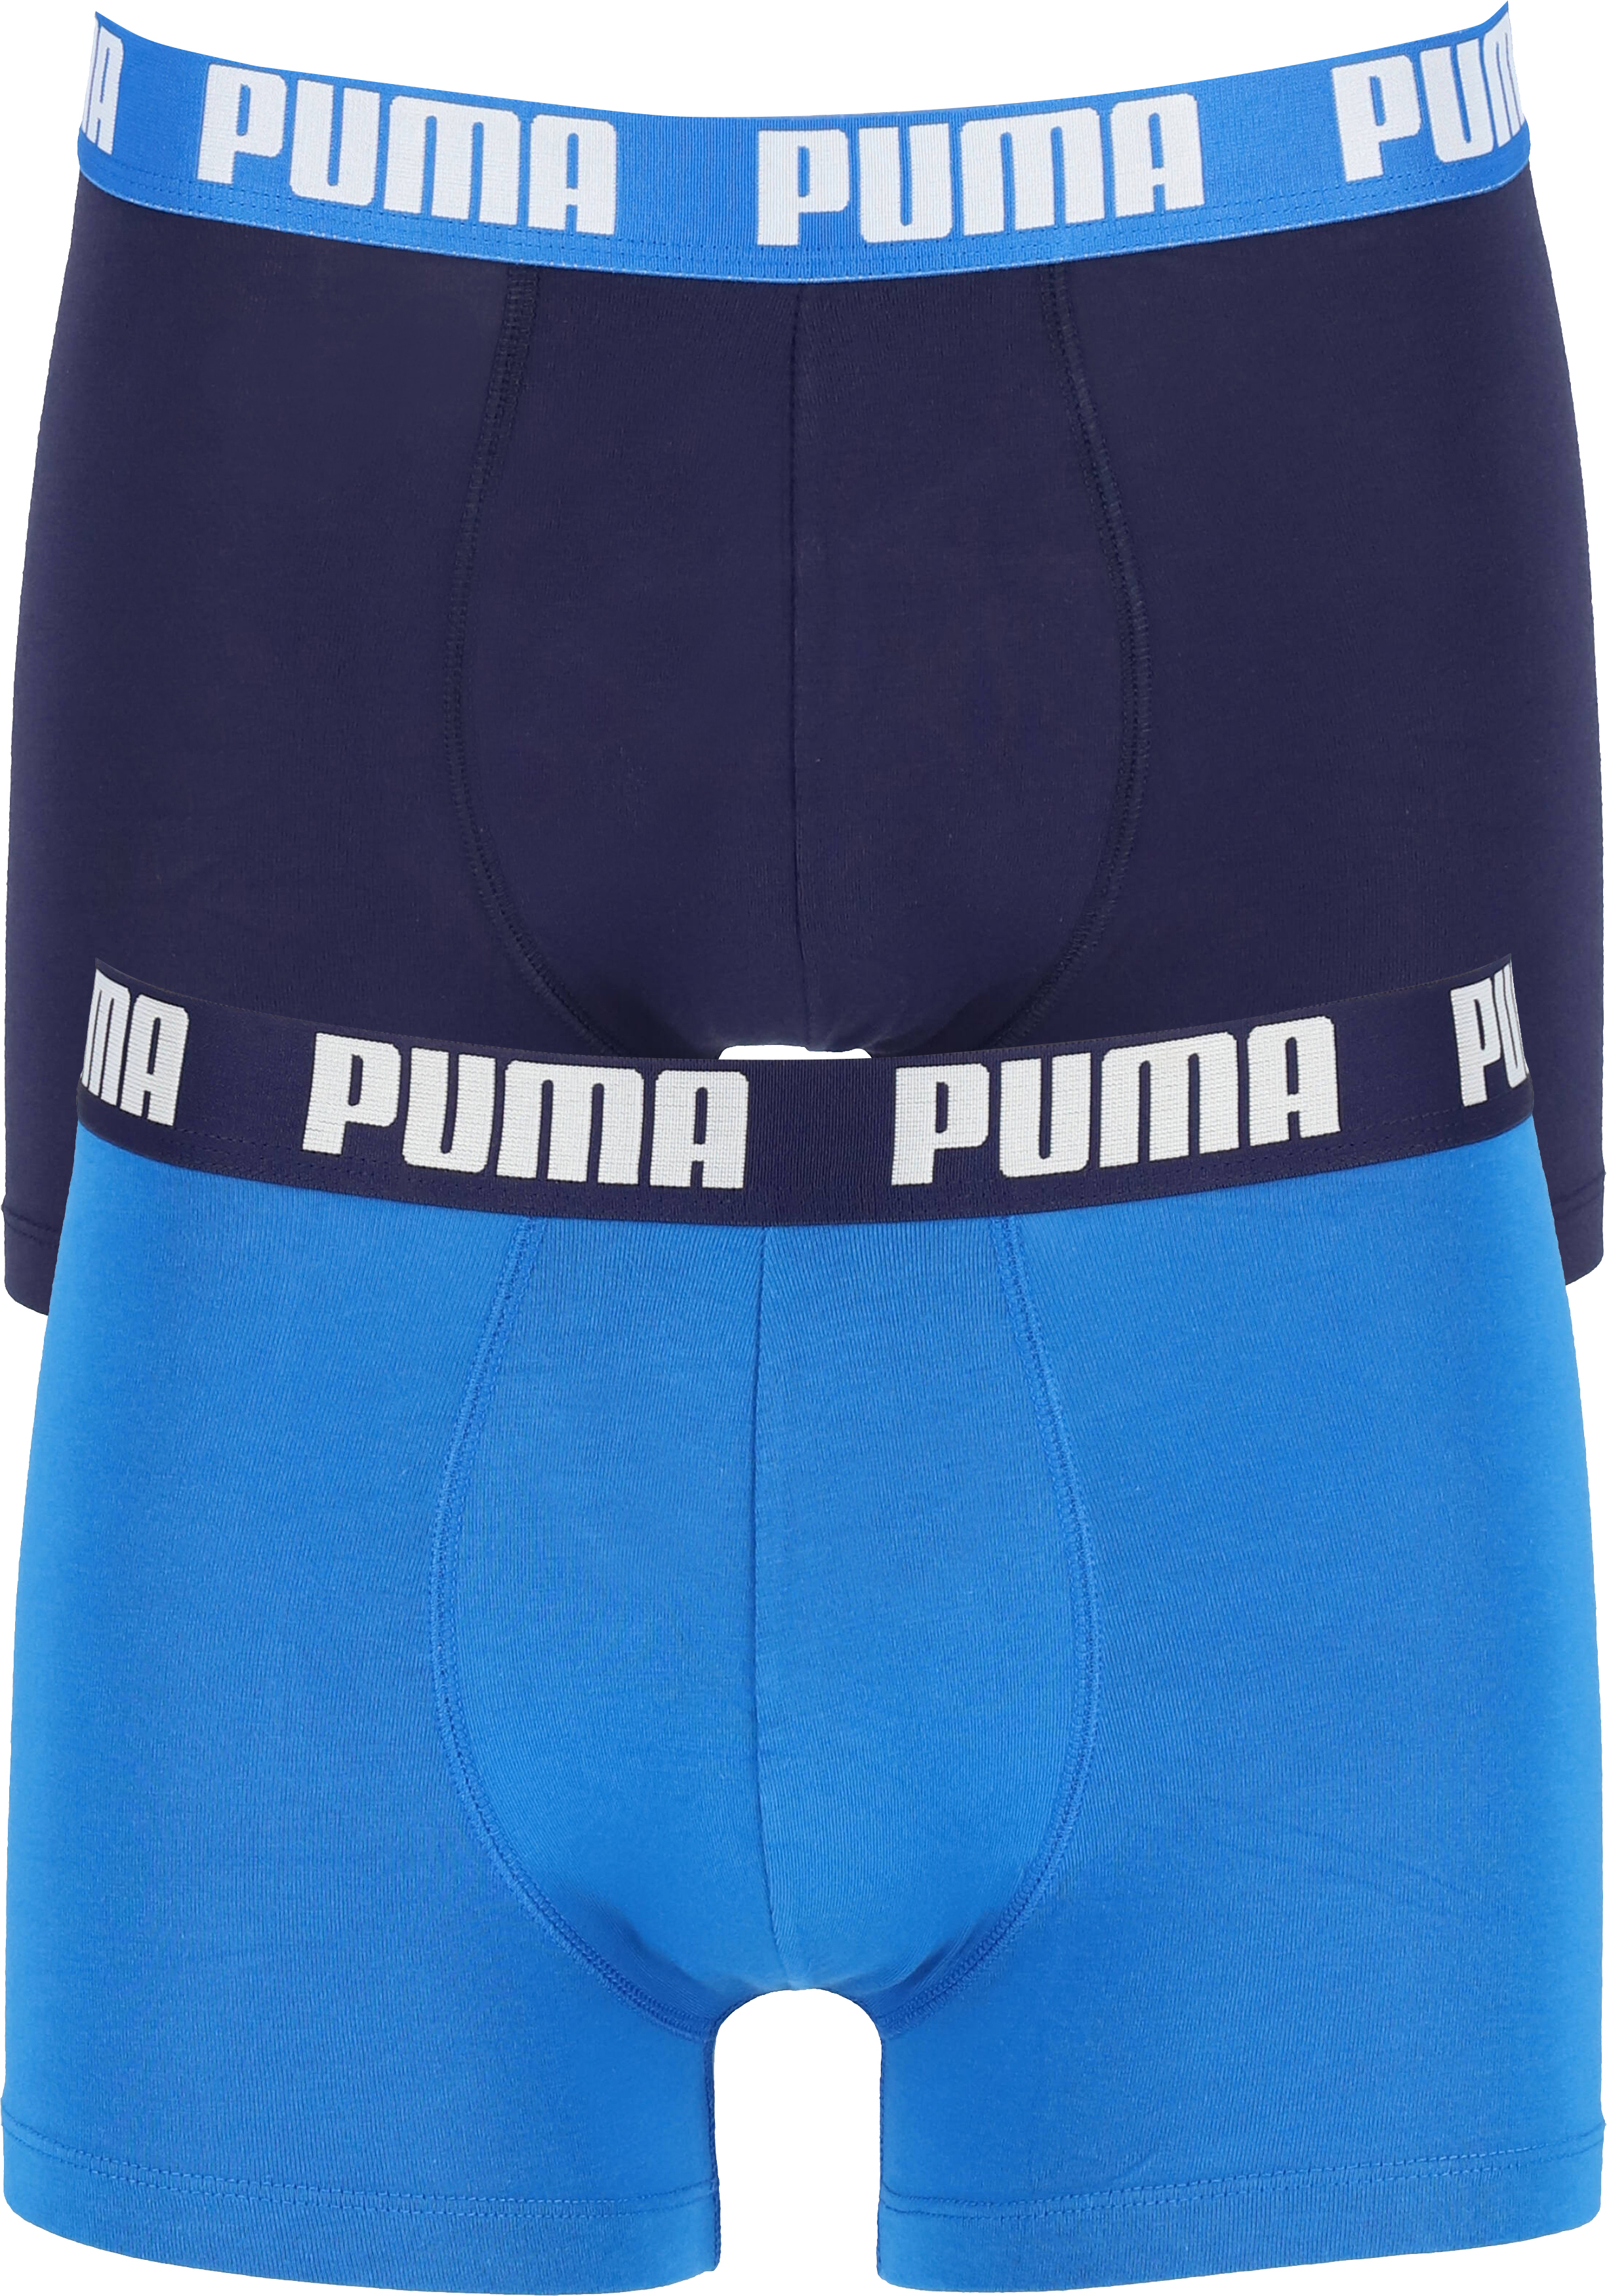 Puma Basic Boxer heren (2-pack), licht- en donkerblauw - vakantie DEALS: bestel vele artikelen topmerken met korting